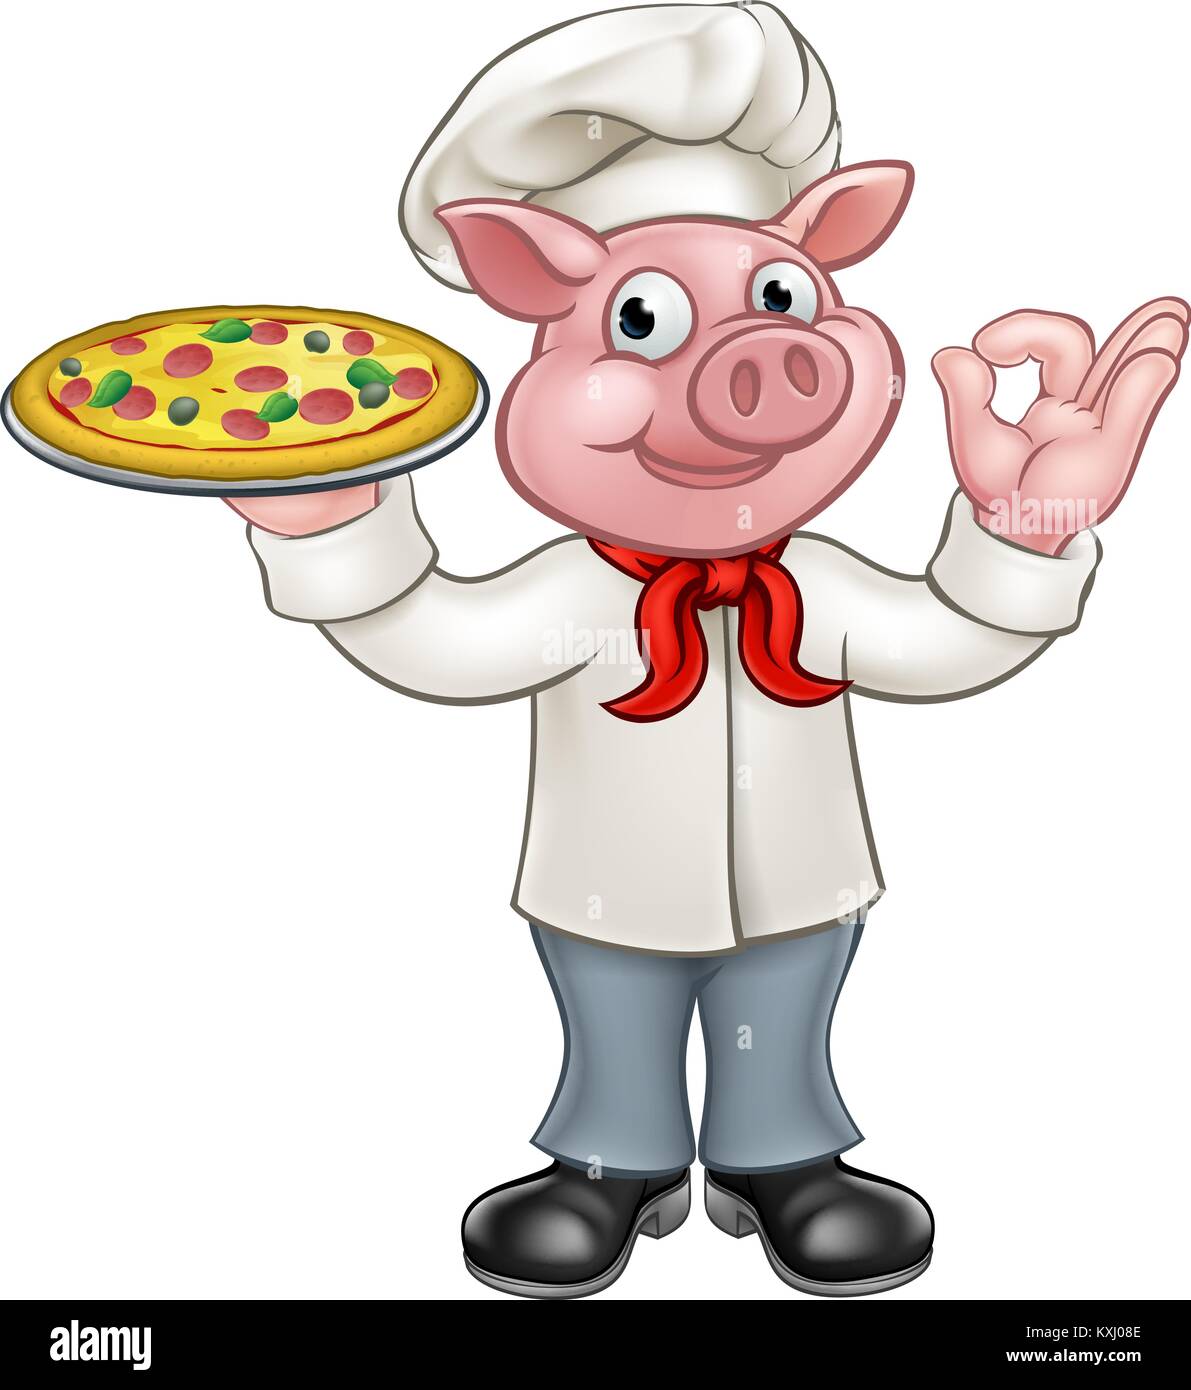 Pizza Chef cochon Personnage Mascot Illustration de Vecteur